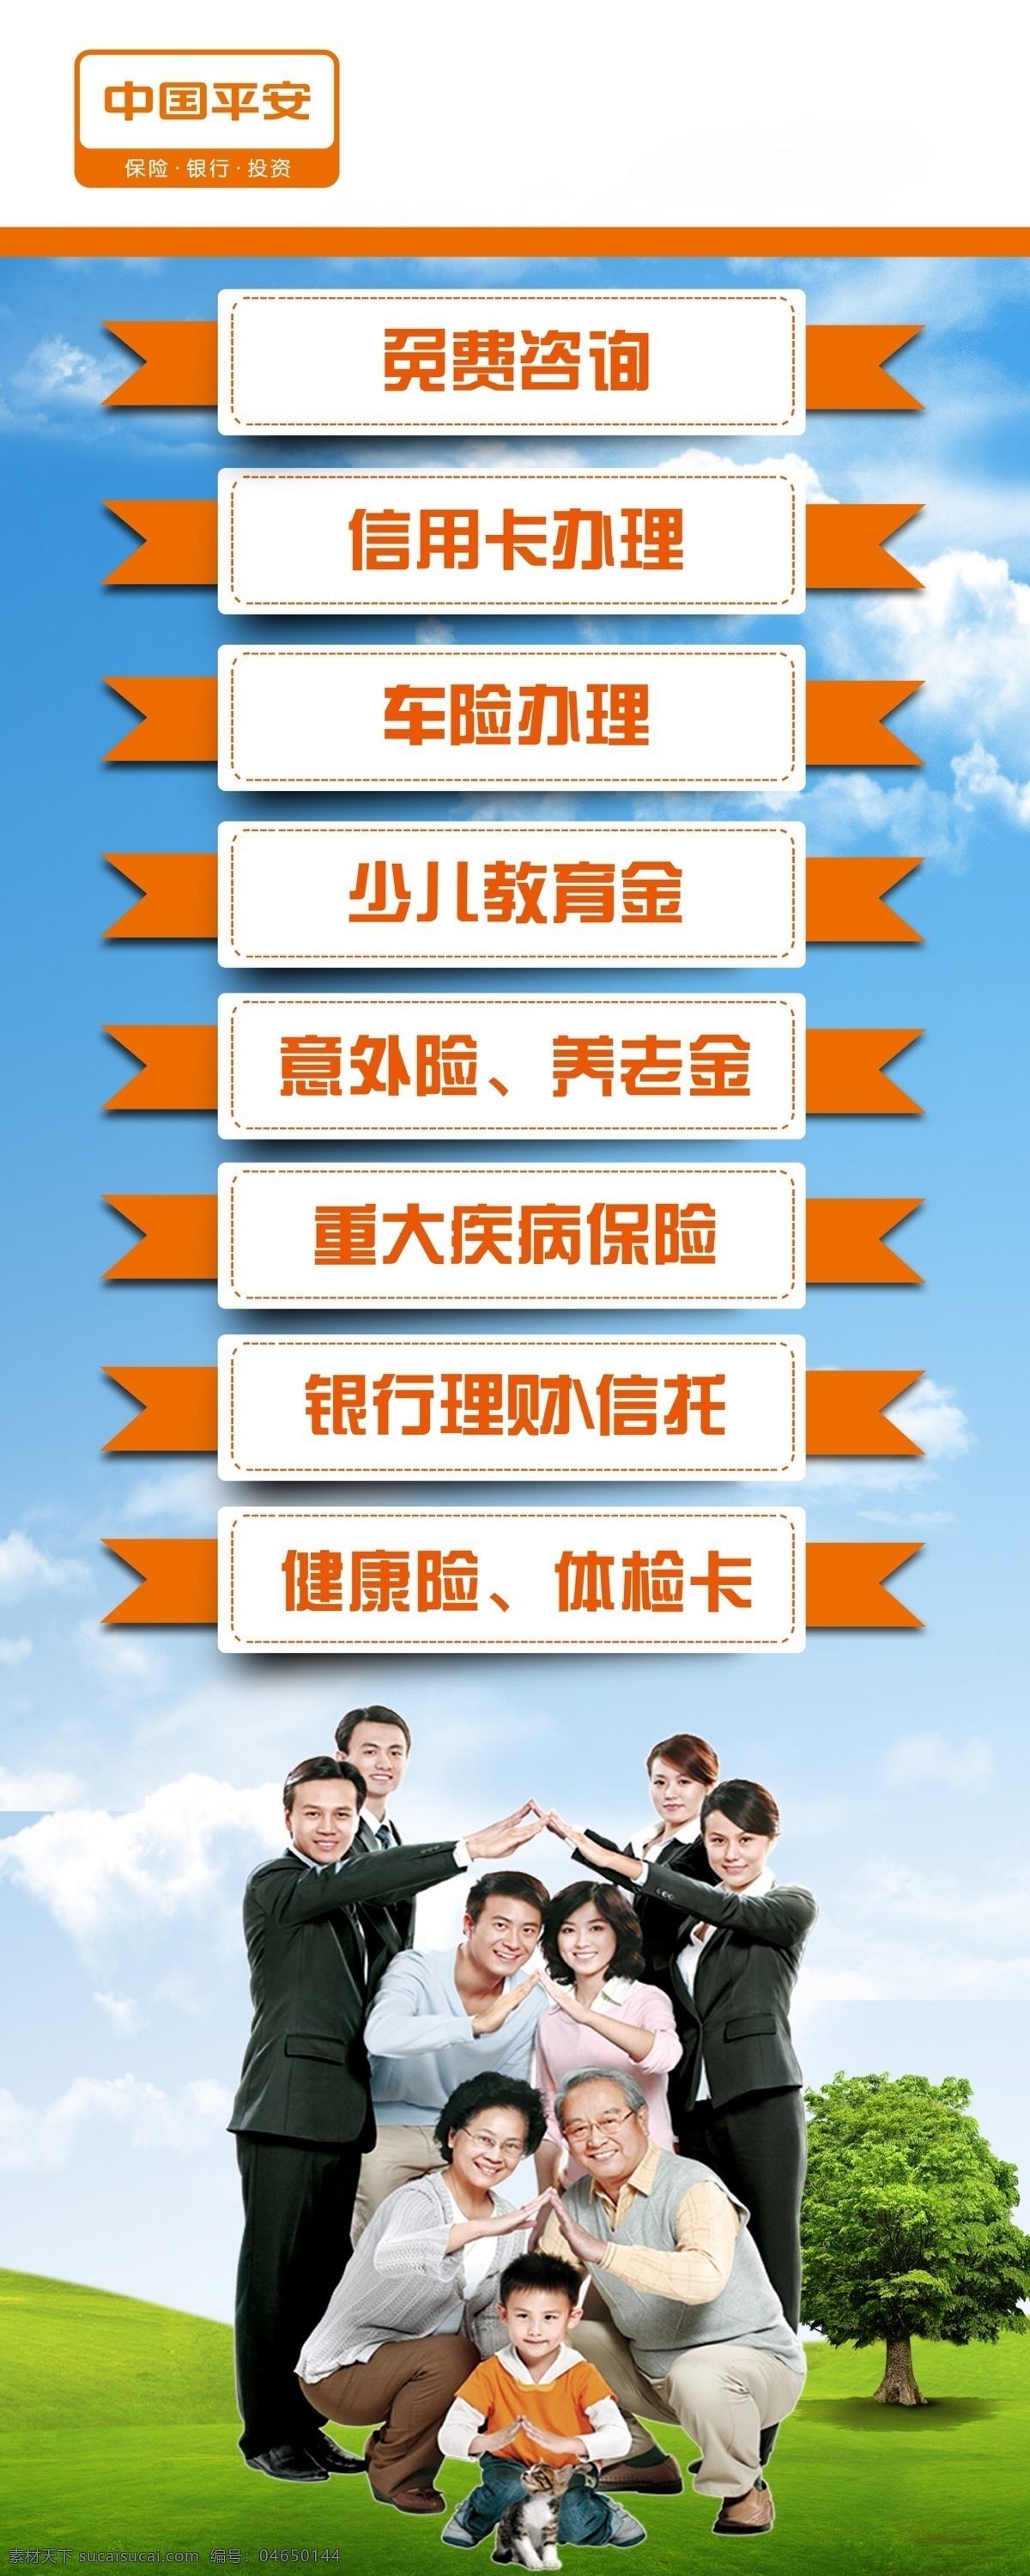 中国平安 业务 海报 保险 寿险 logo 展架 广告 宣传 x展架